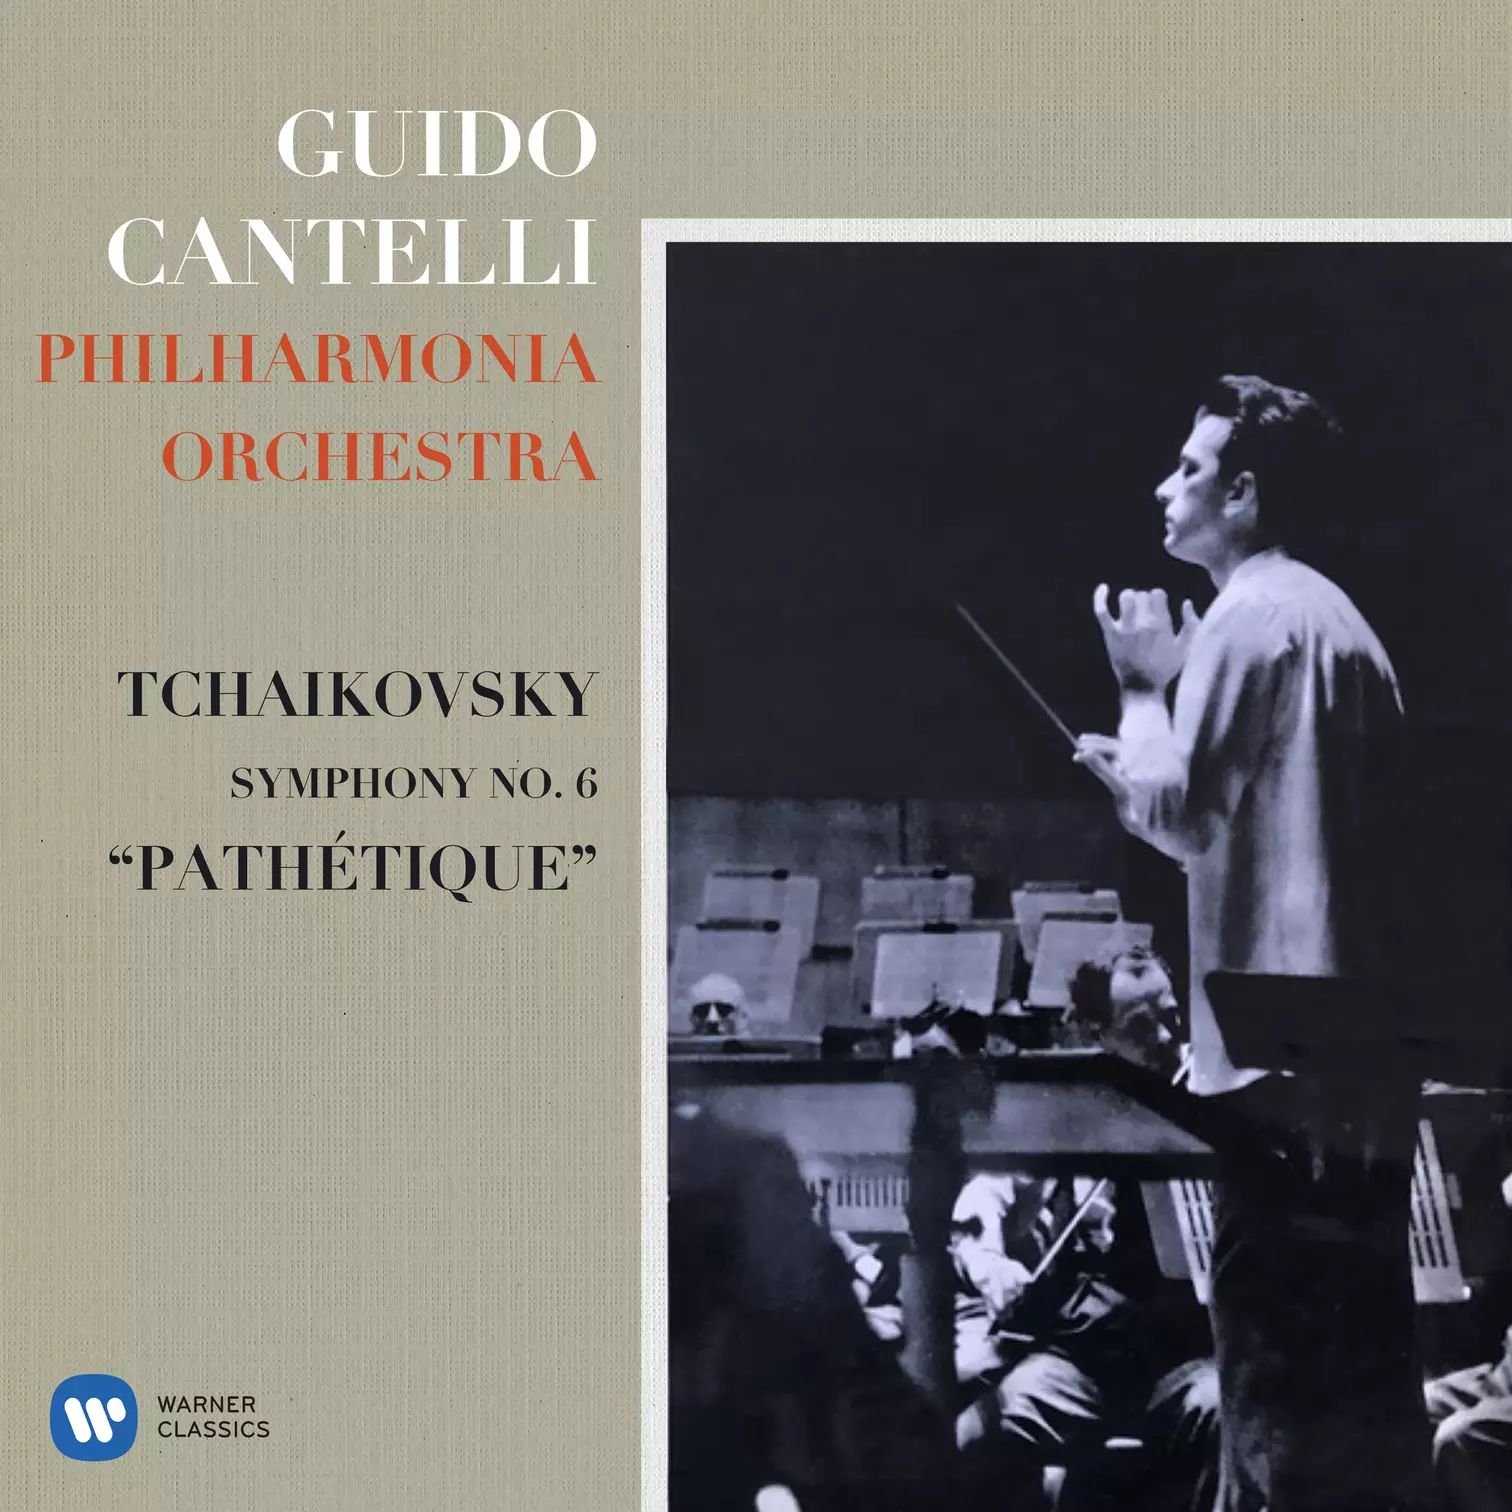 Tchaikovsky: Symphony No. 6 “Pathétique” - Rossini: Overture from La gazza ladra